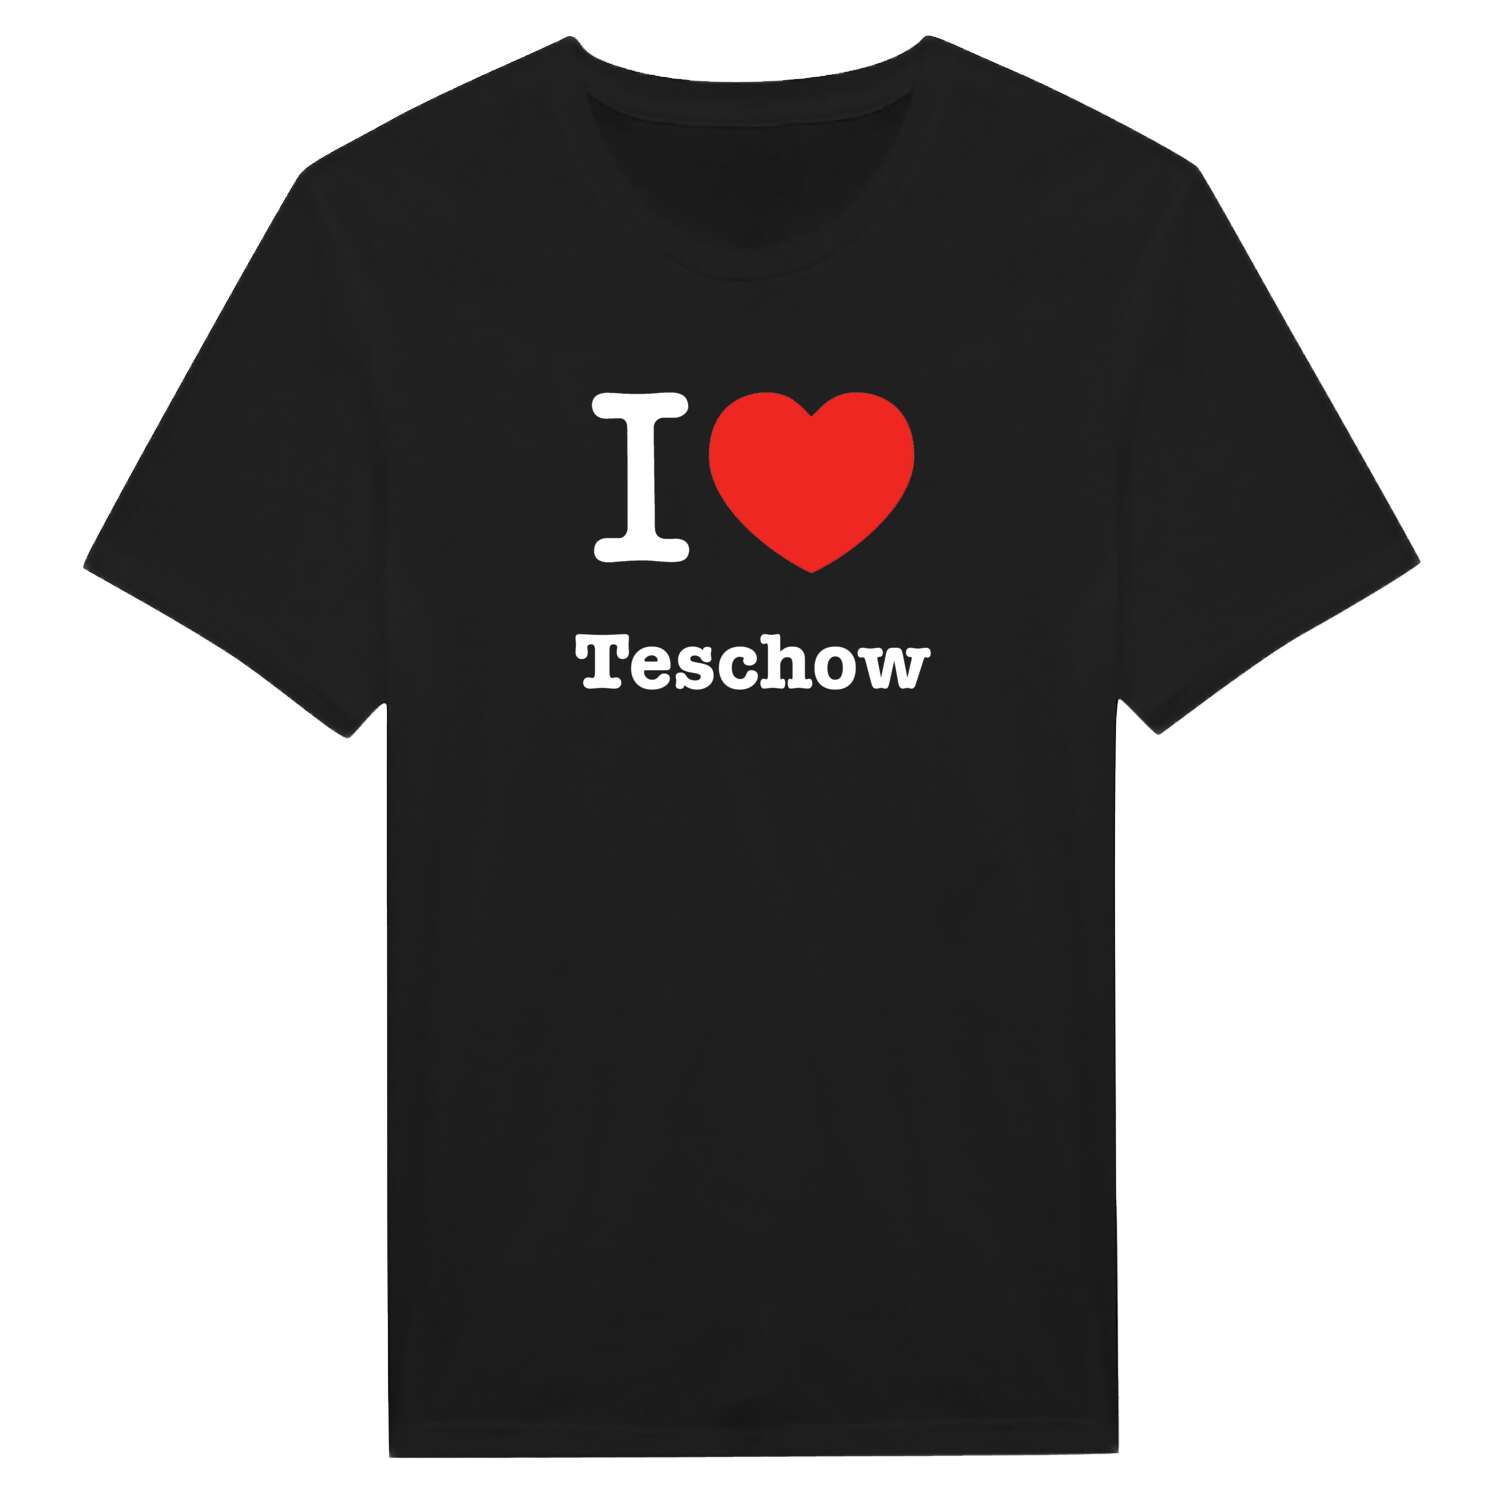 Teschow T-Shirt »I love«